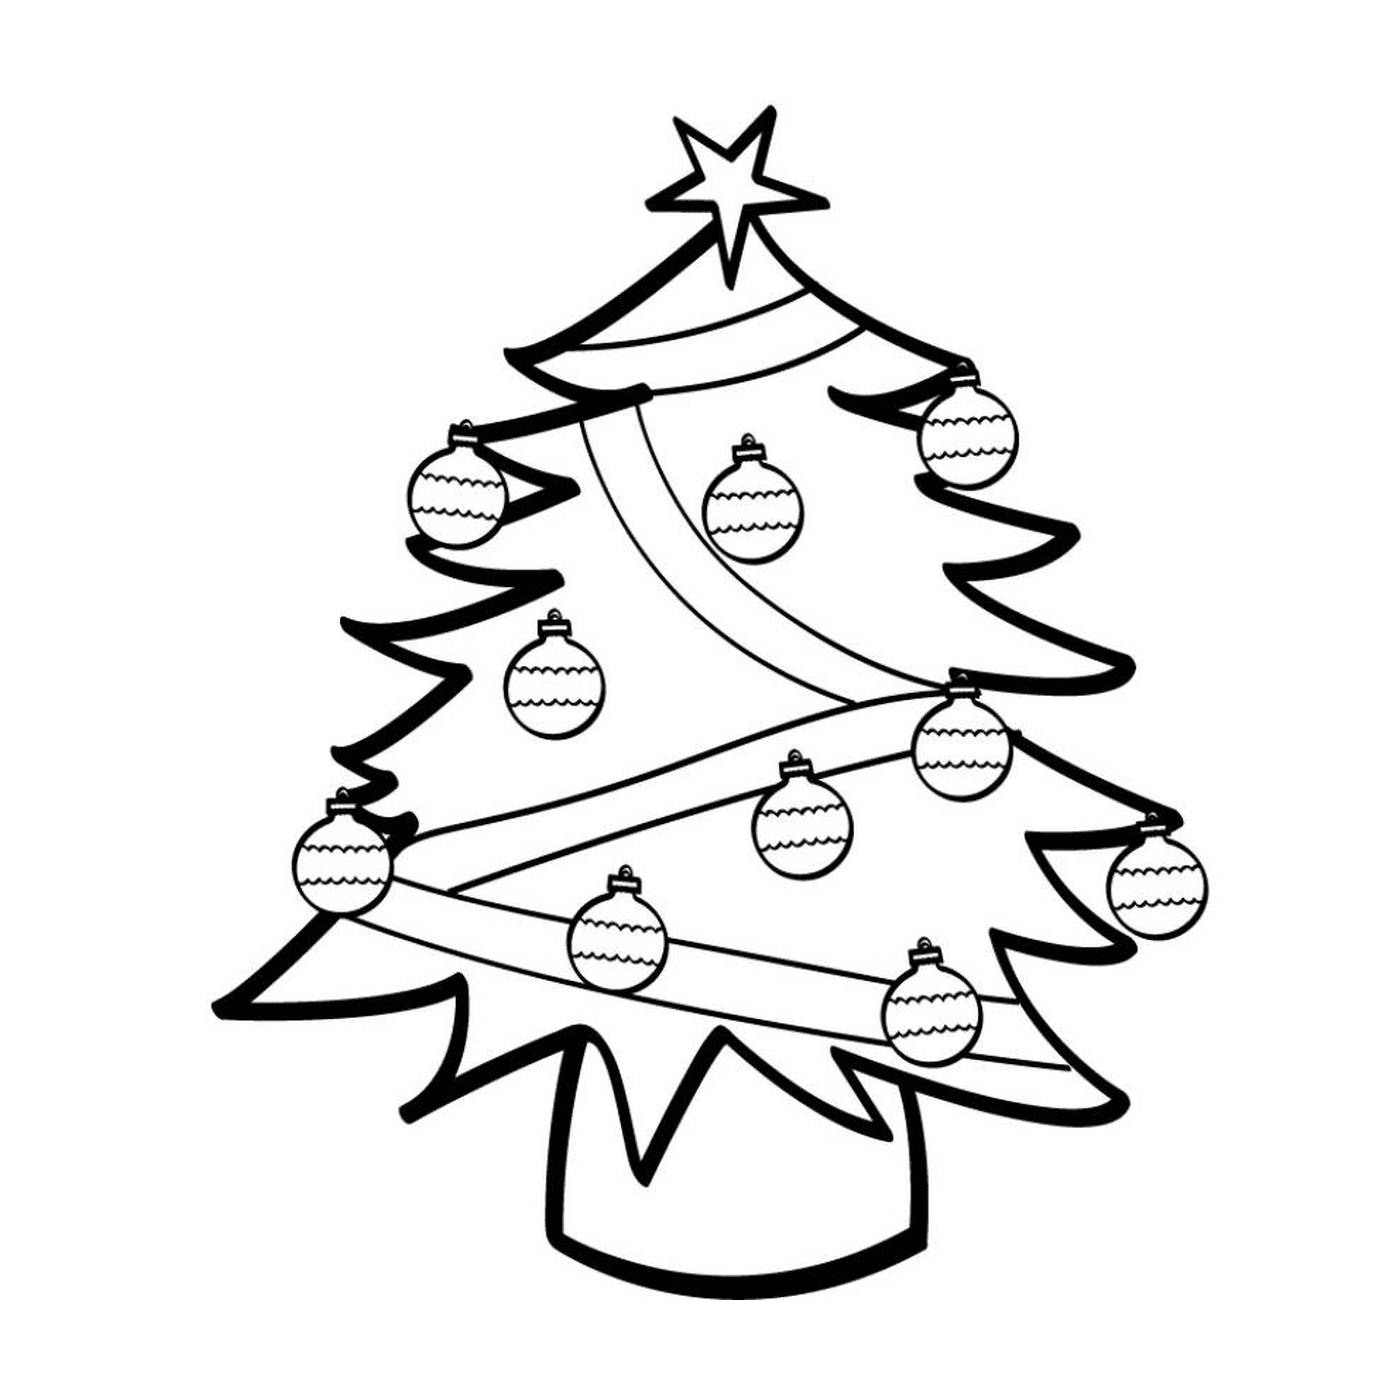  传统圣诞树 